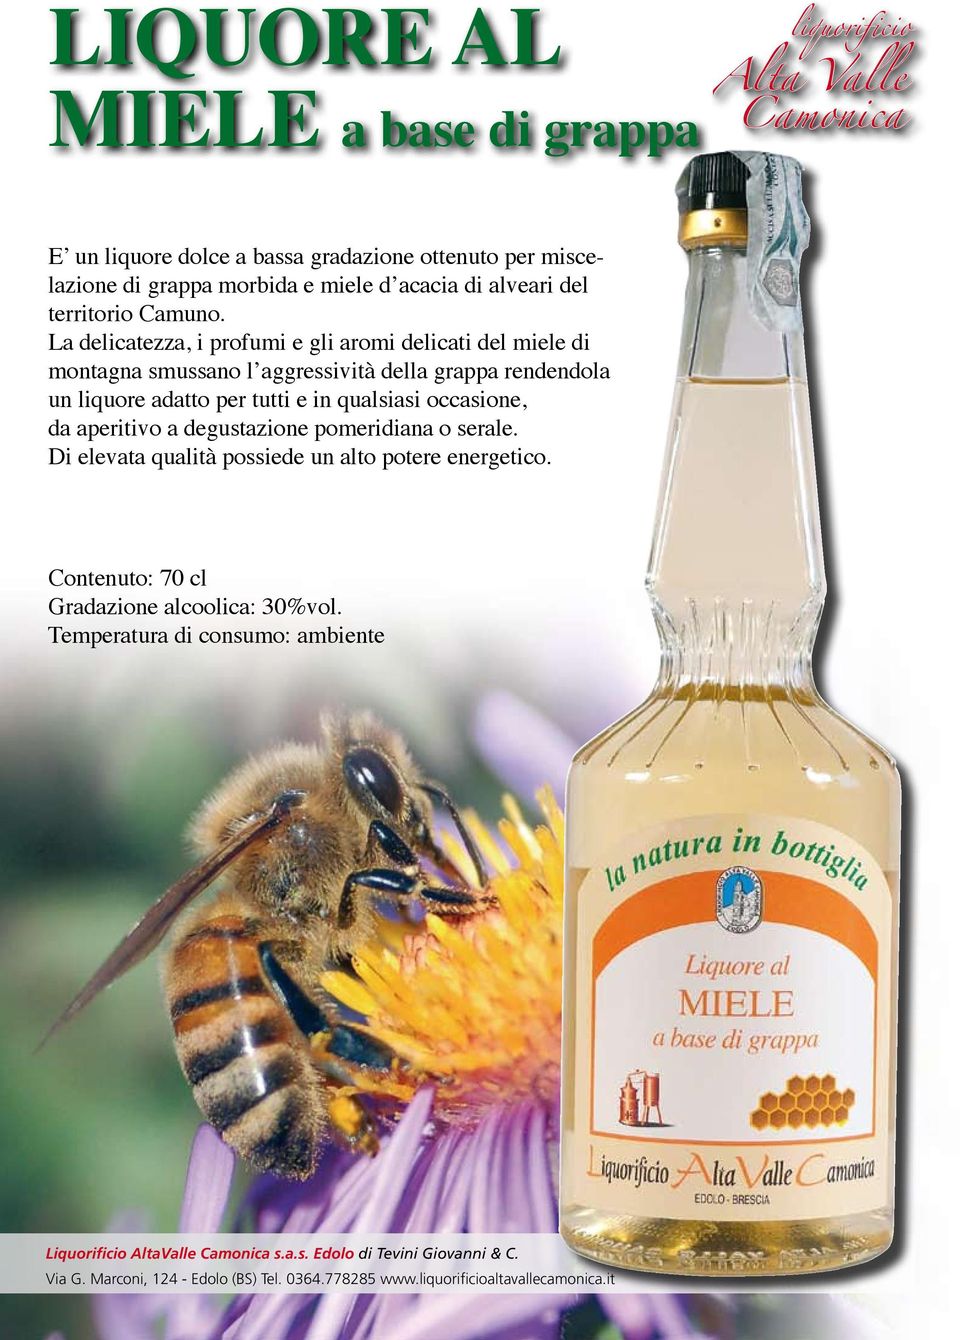 La delicatezza, i profumi e gli aromi delicati del miele di montagna smussano l aggressività della grappa rendendola un liquore adatto per